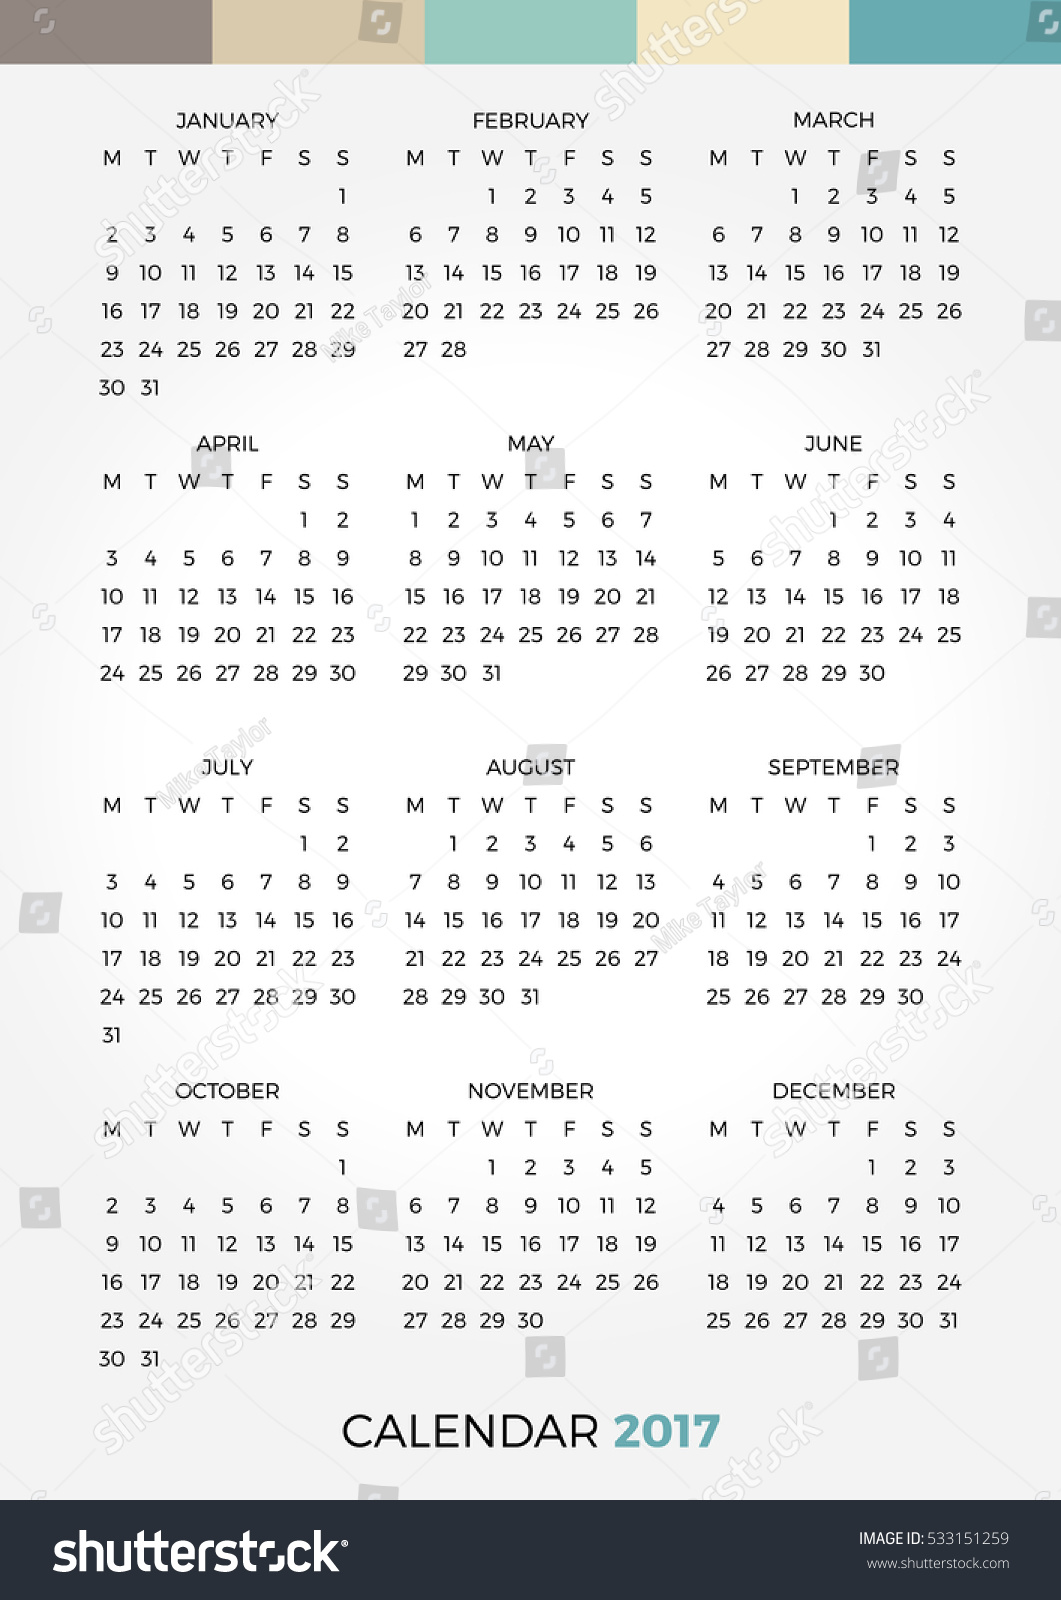 2017 Vector Calendar - 533151259 : Shutterstock